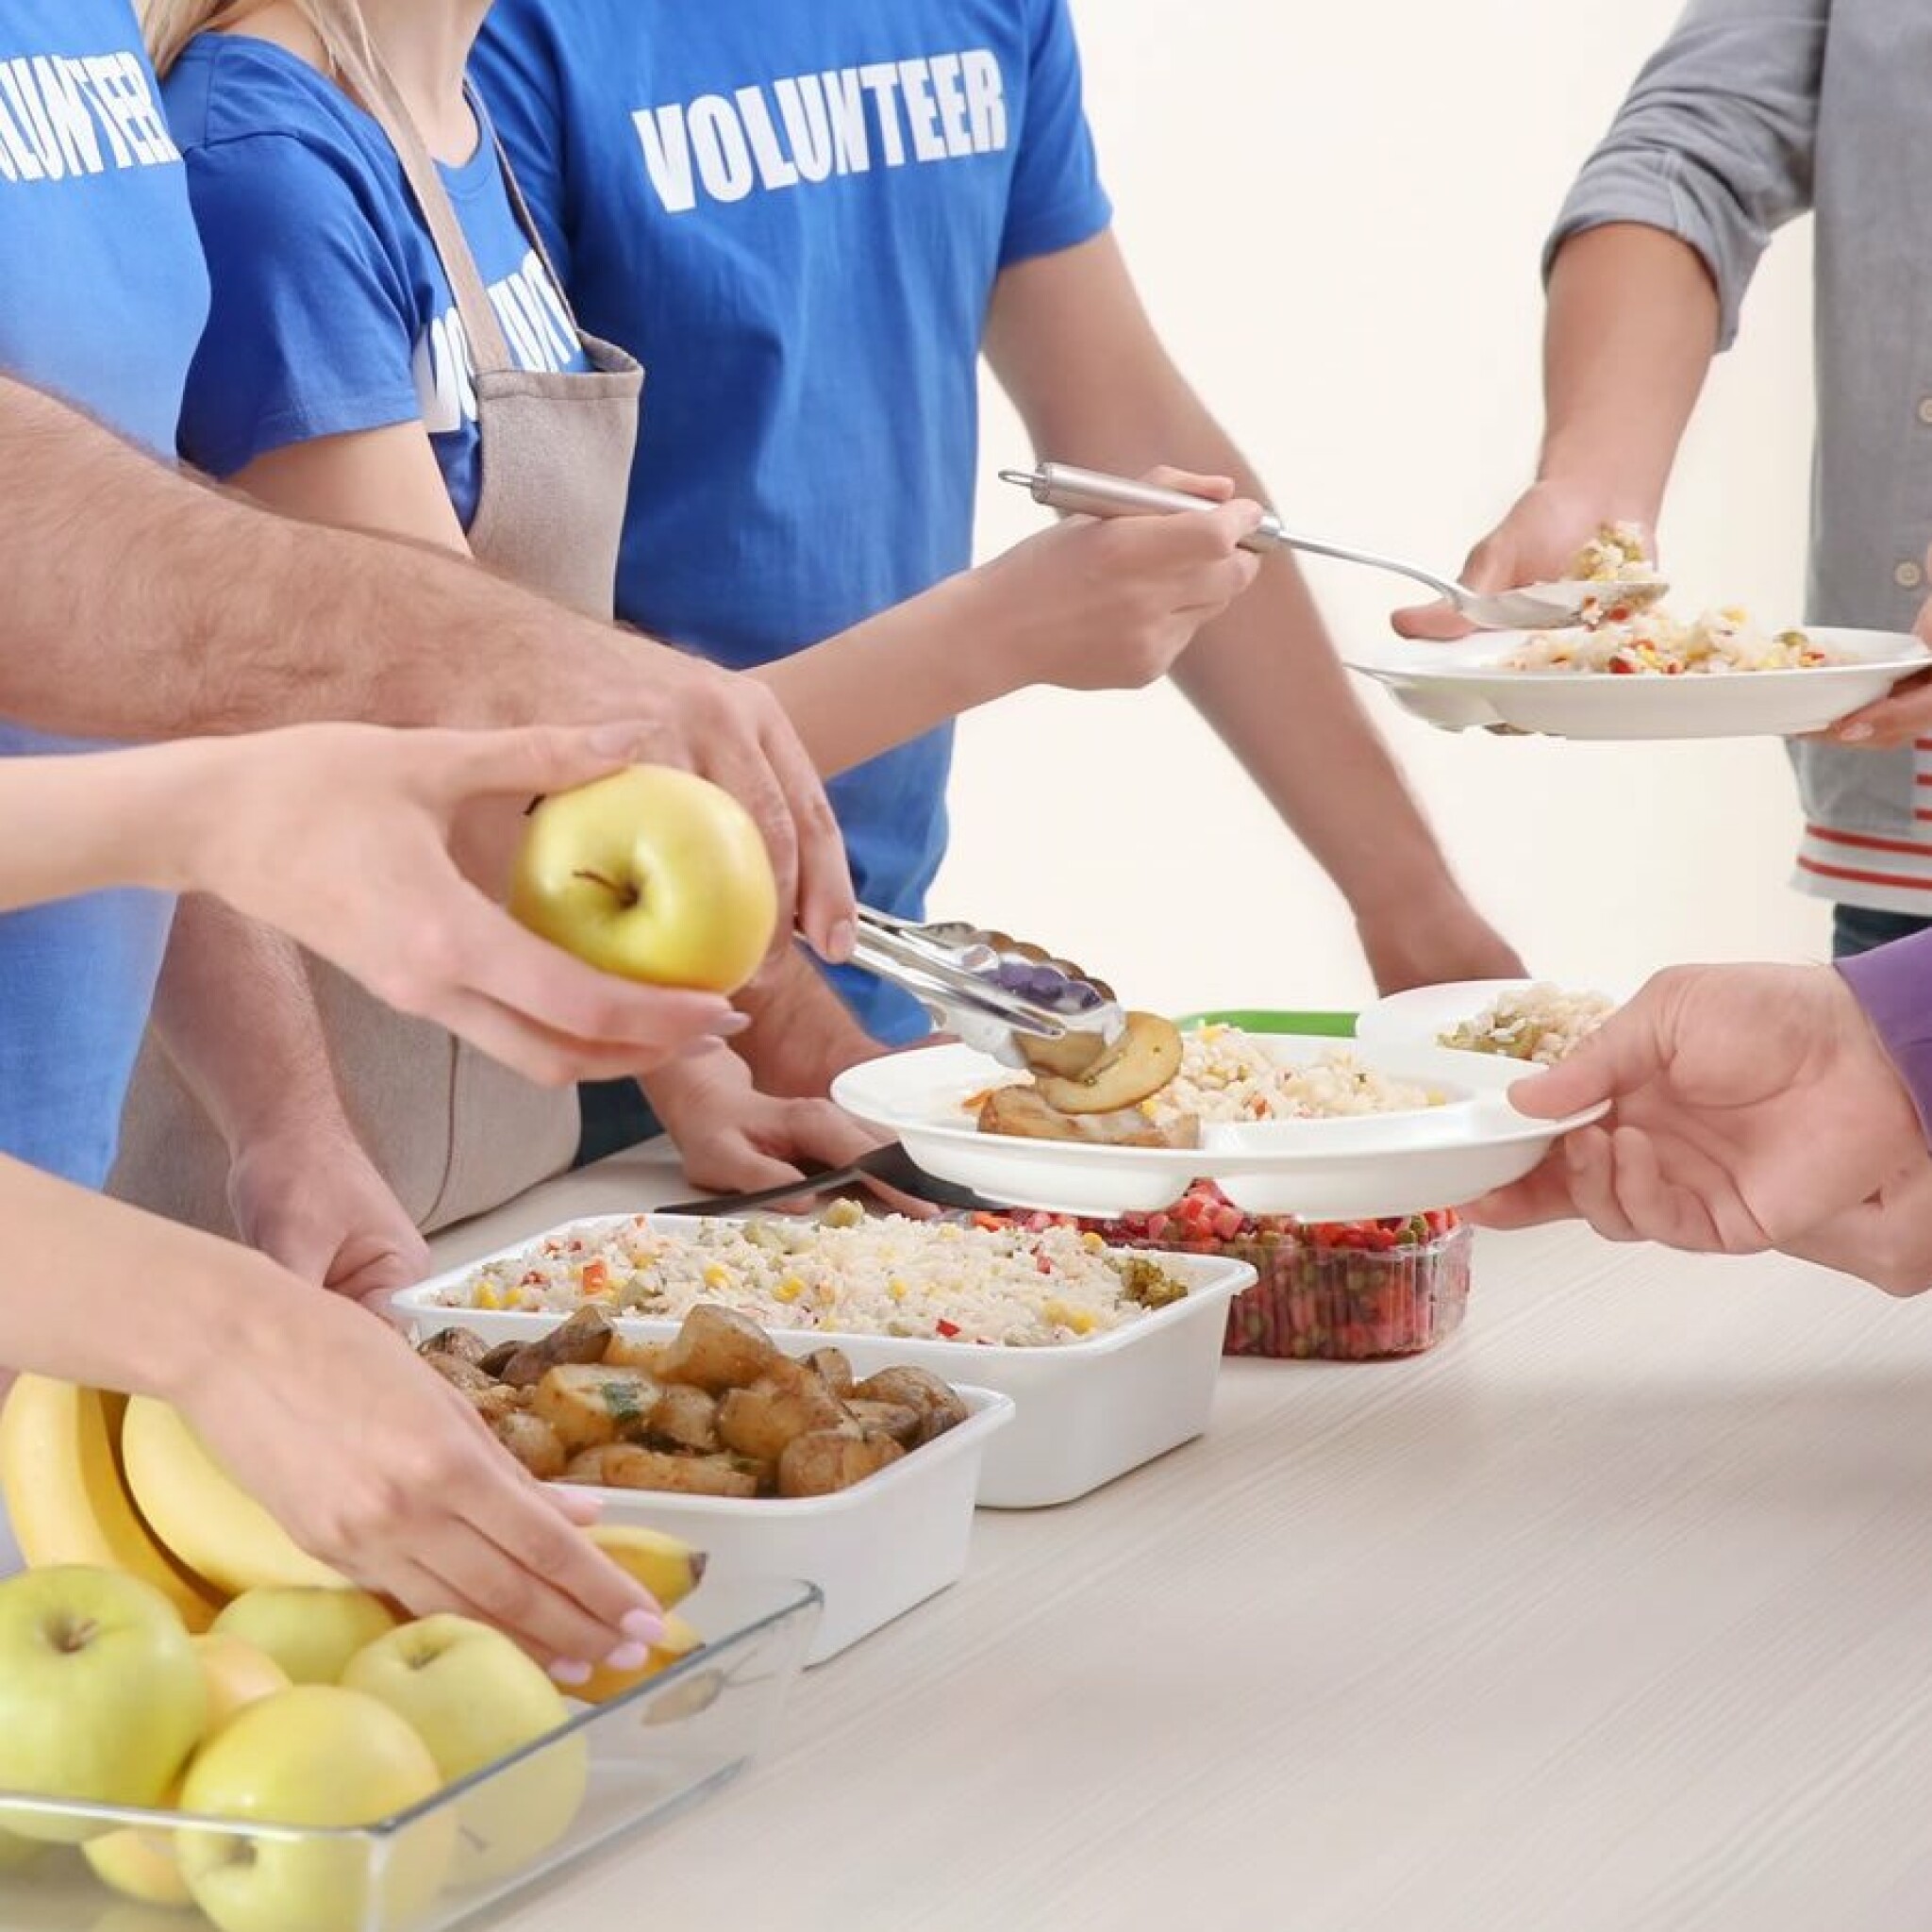 young-volunteers-serving-food-to-homeless-people.jpg